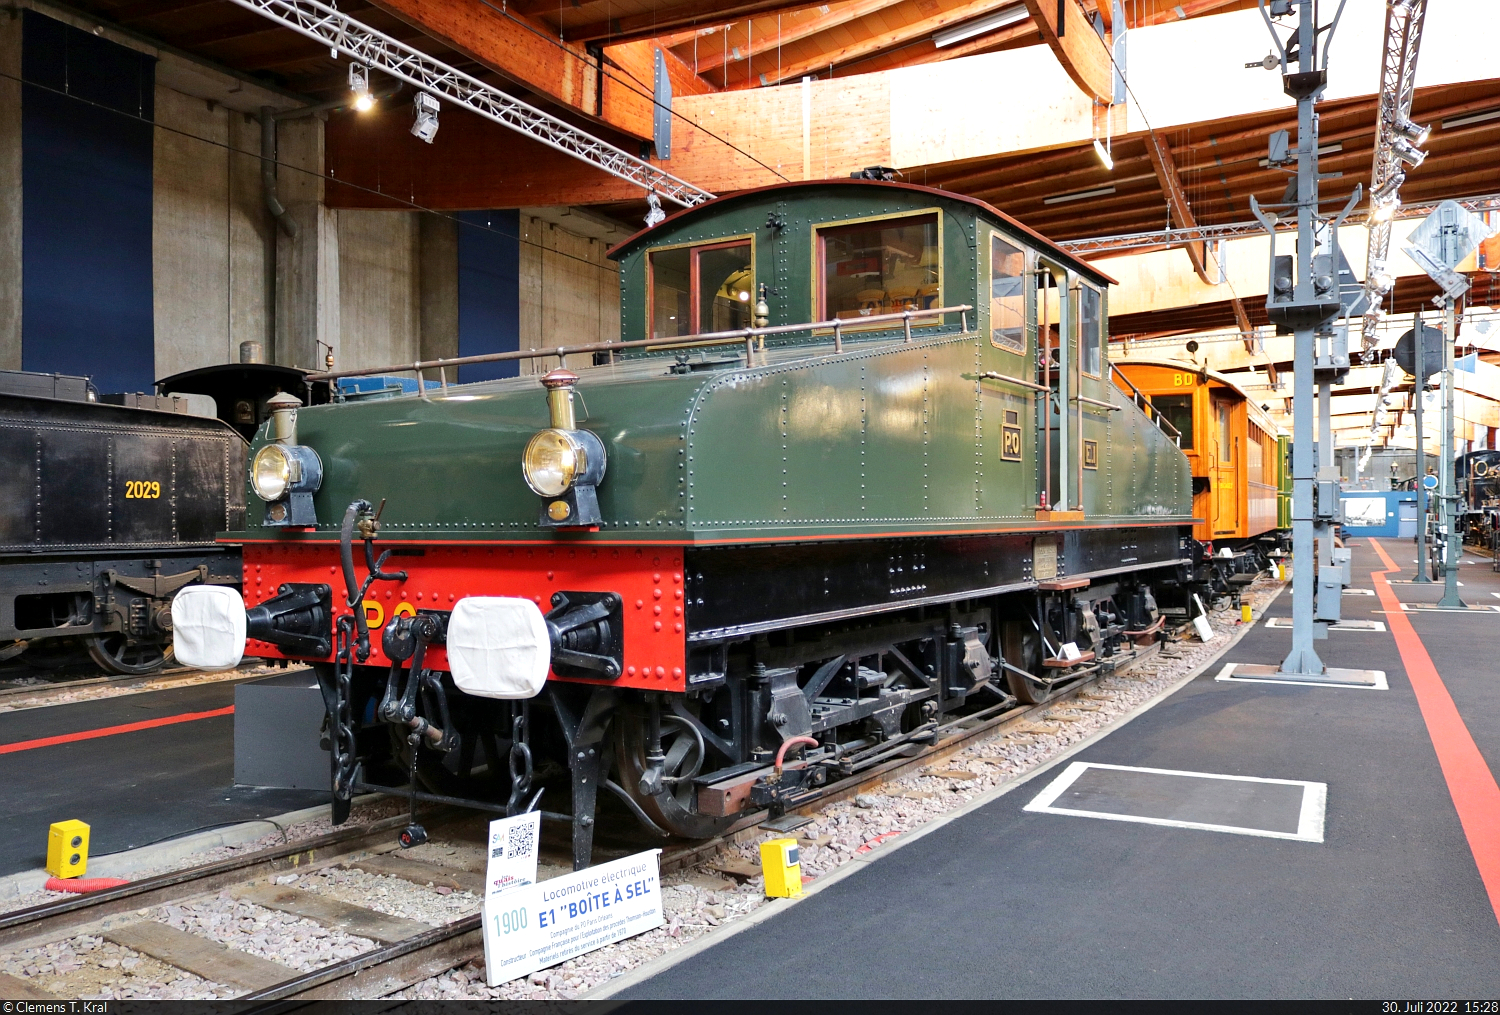 Die 1900 erbaute BB E 1 (BB 1283)  Boîte à sel  der ehemaligen Compagnie du chemin de fer de Paris à Orléans (PO) ist Teil der historischen Ausstellung des Cité du Train (Eisenbahnmuseum) Mulhouse (F).

🧰 Cité du Train - Patrimoine SNCF
🕓 30.7.2022 | 15:28 Uhr